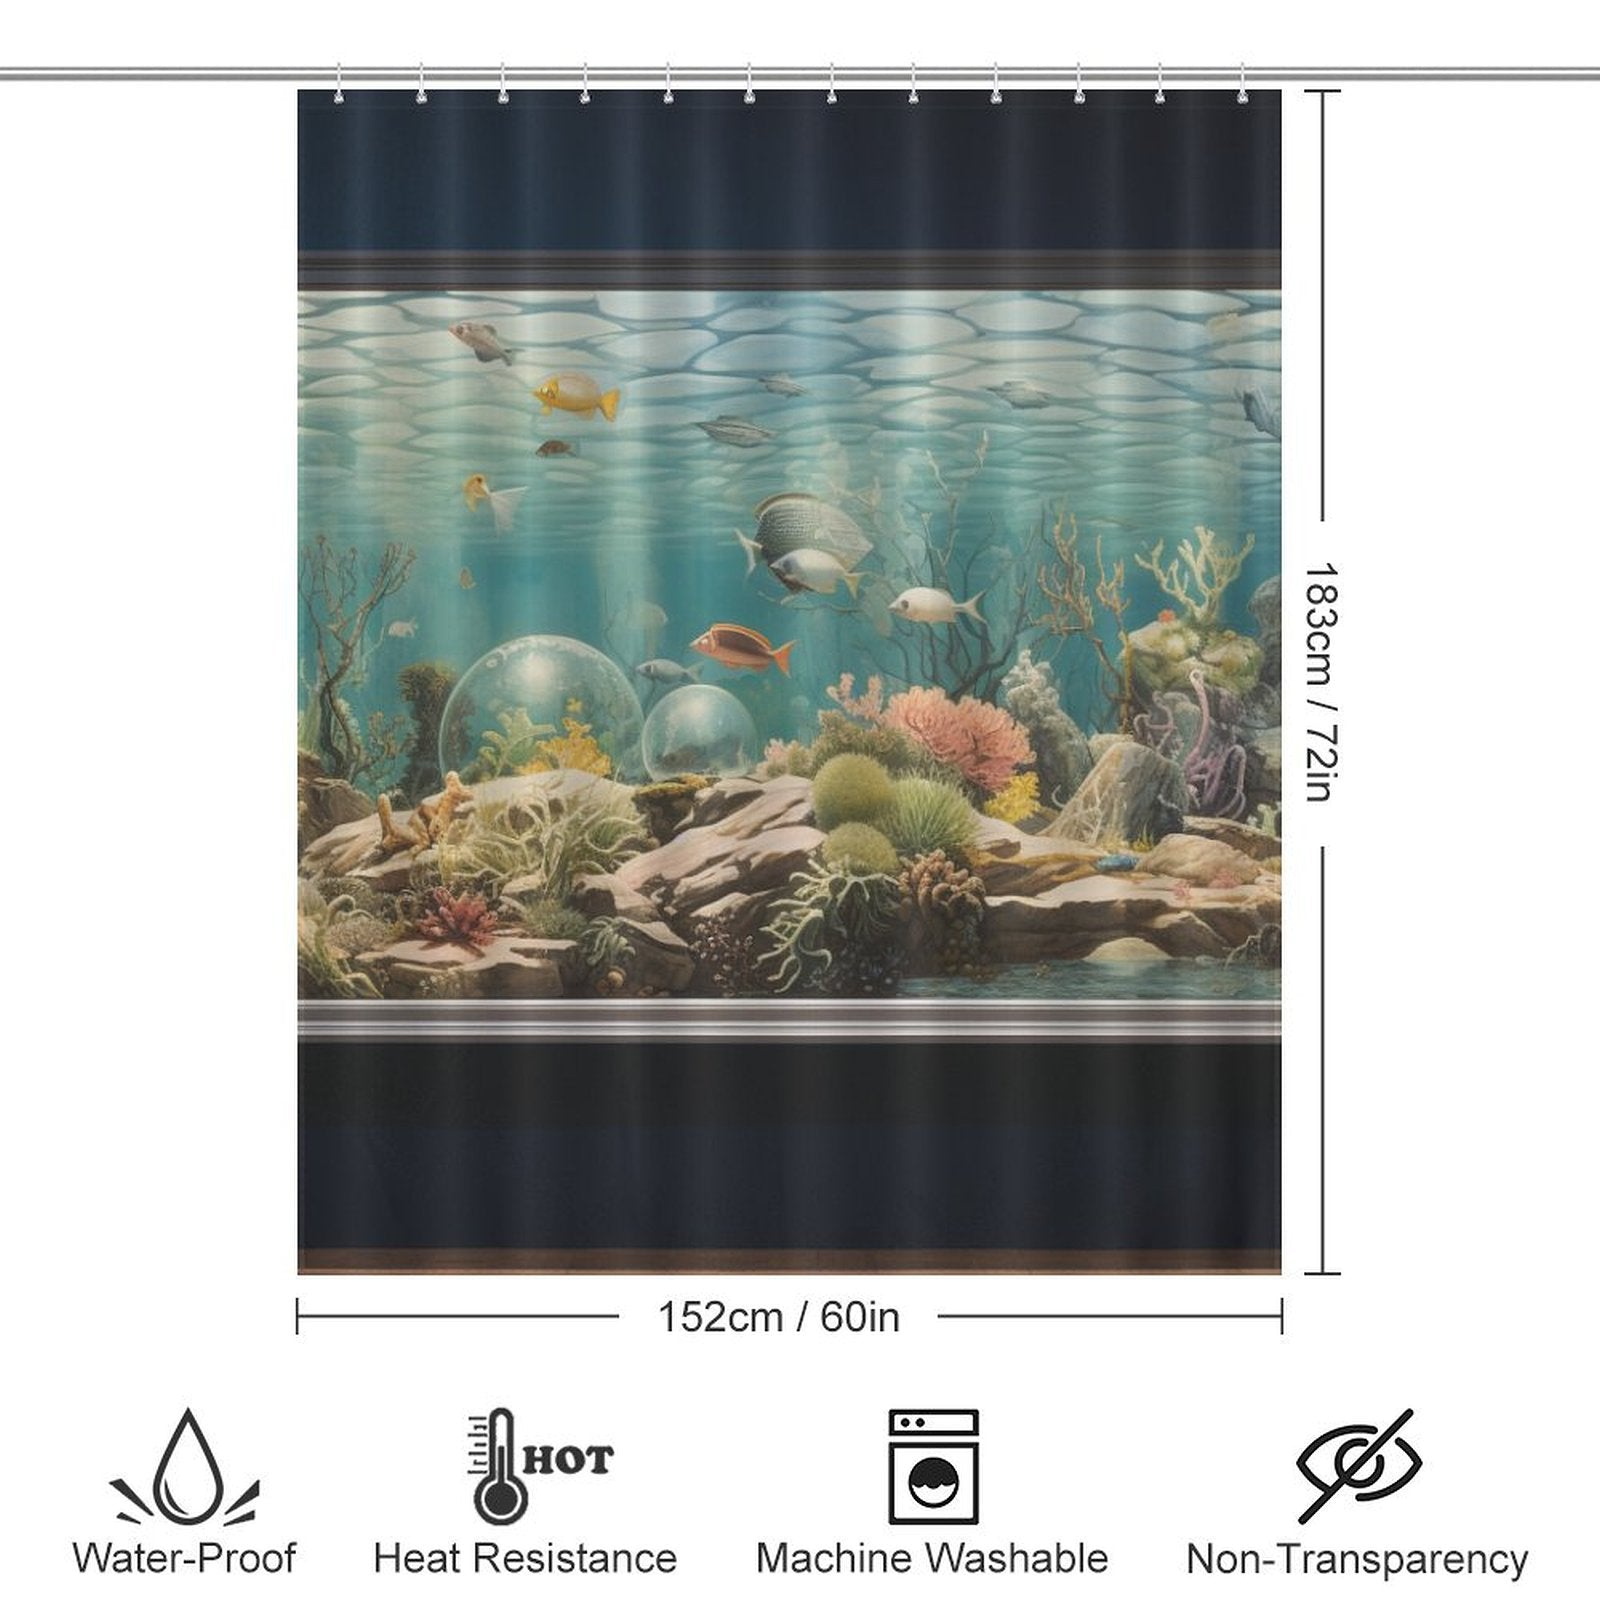 Marine Life Aquarium Shower Curtain